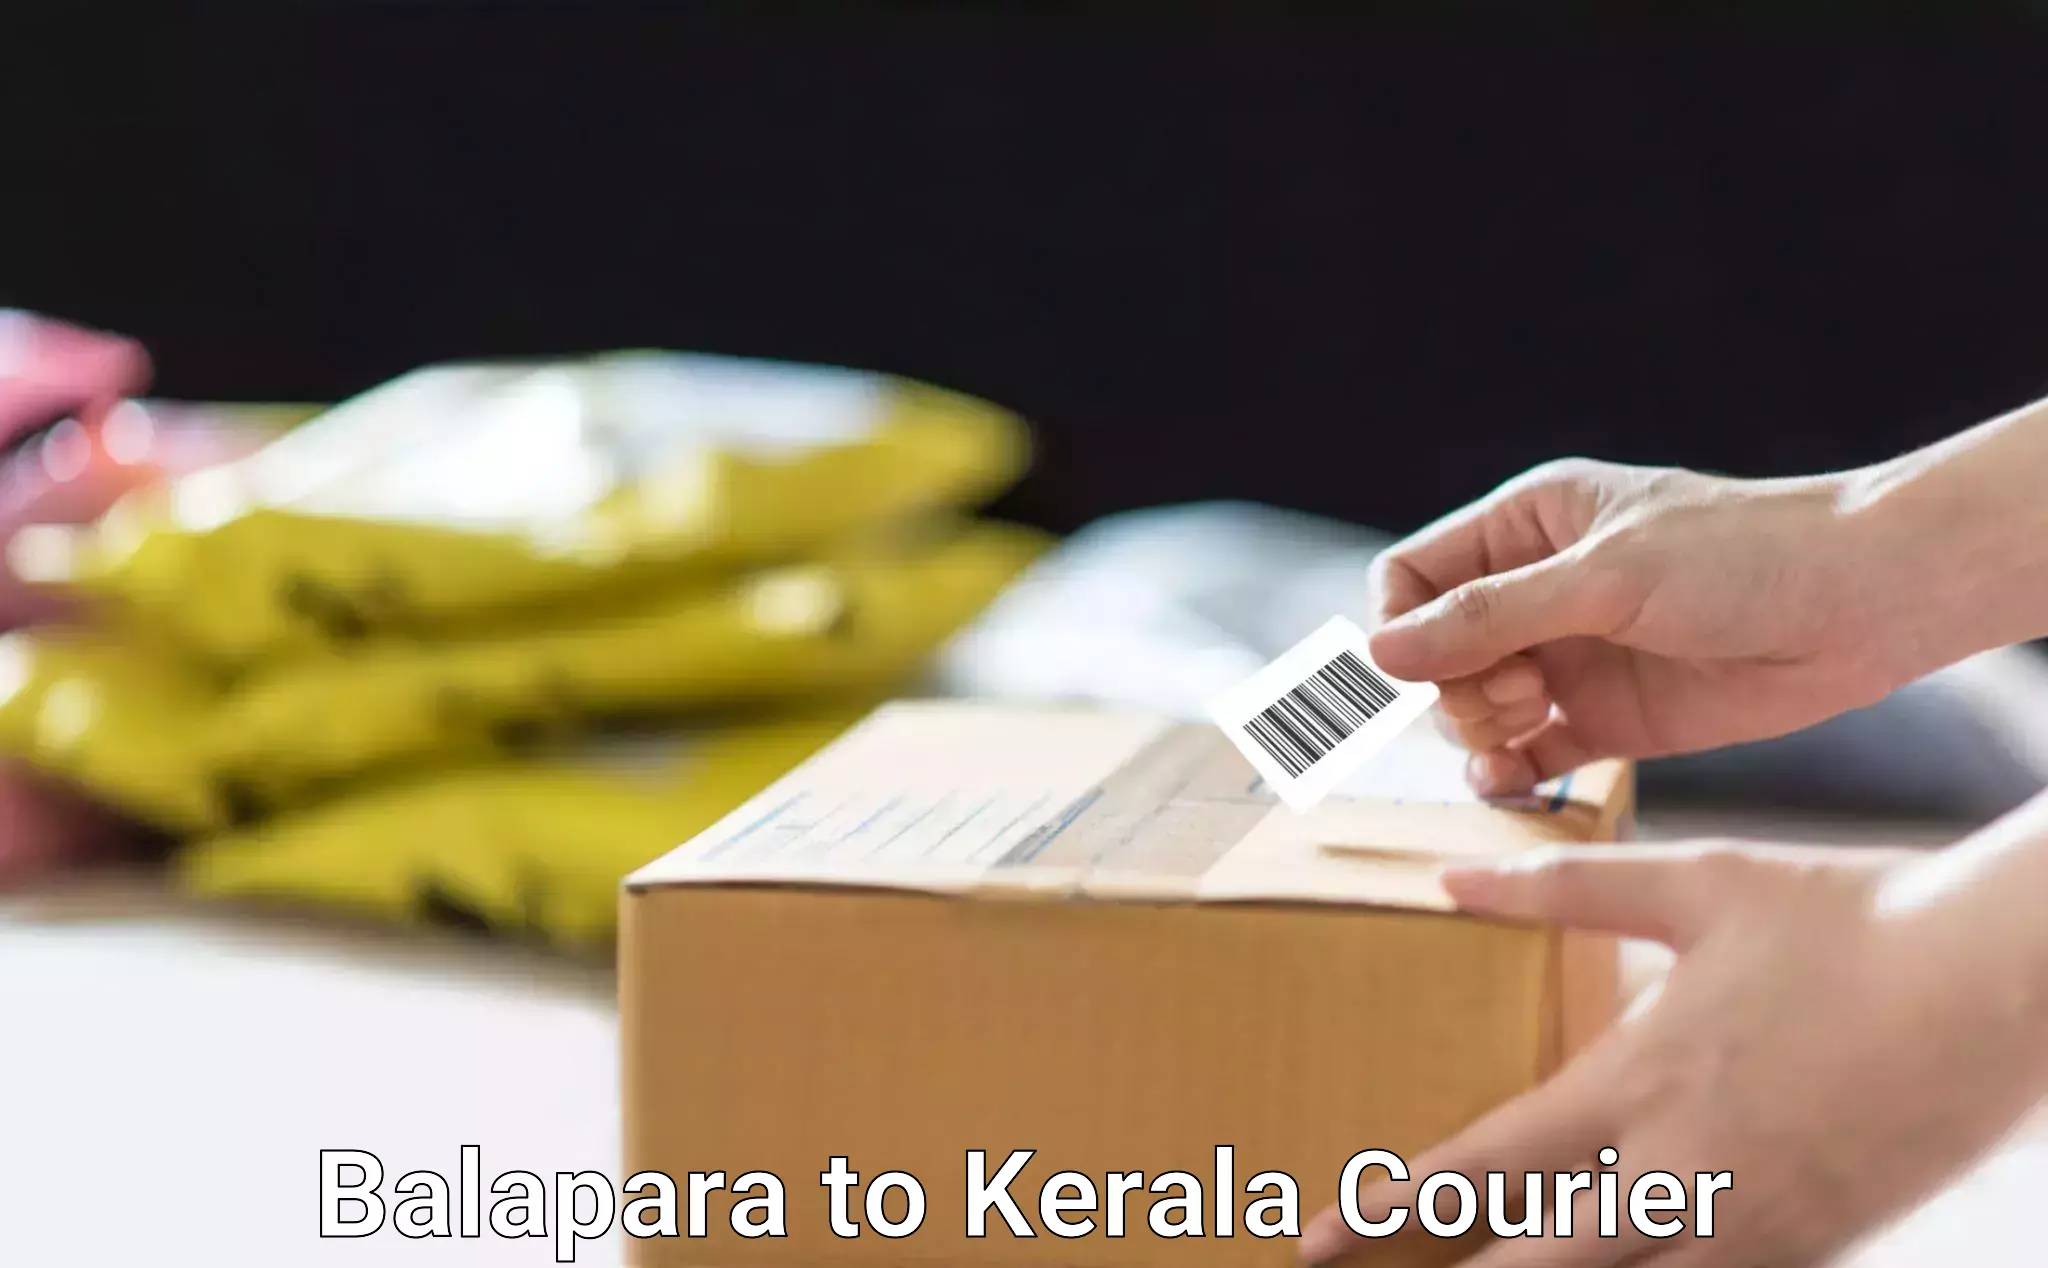 Professional courier handling Balapara to Tirurangadi